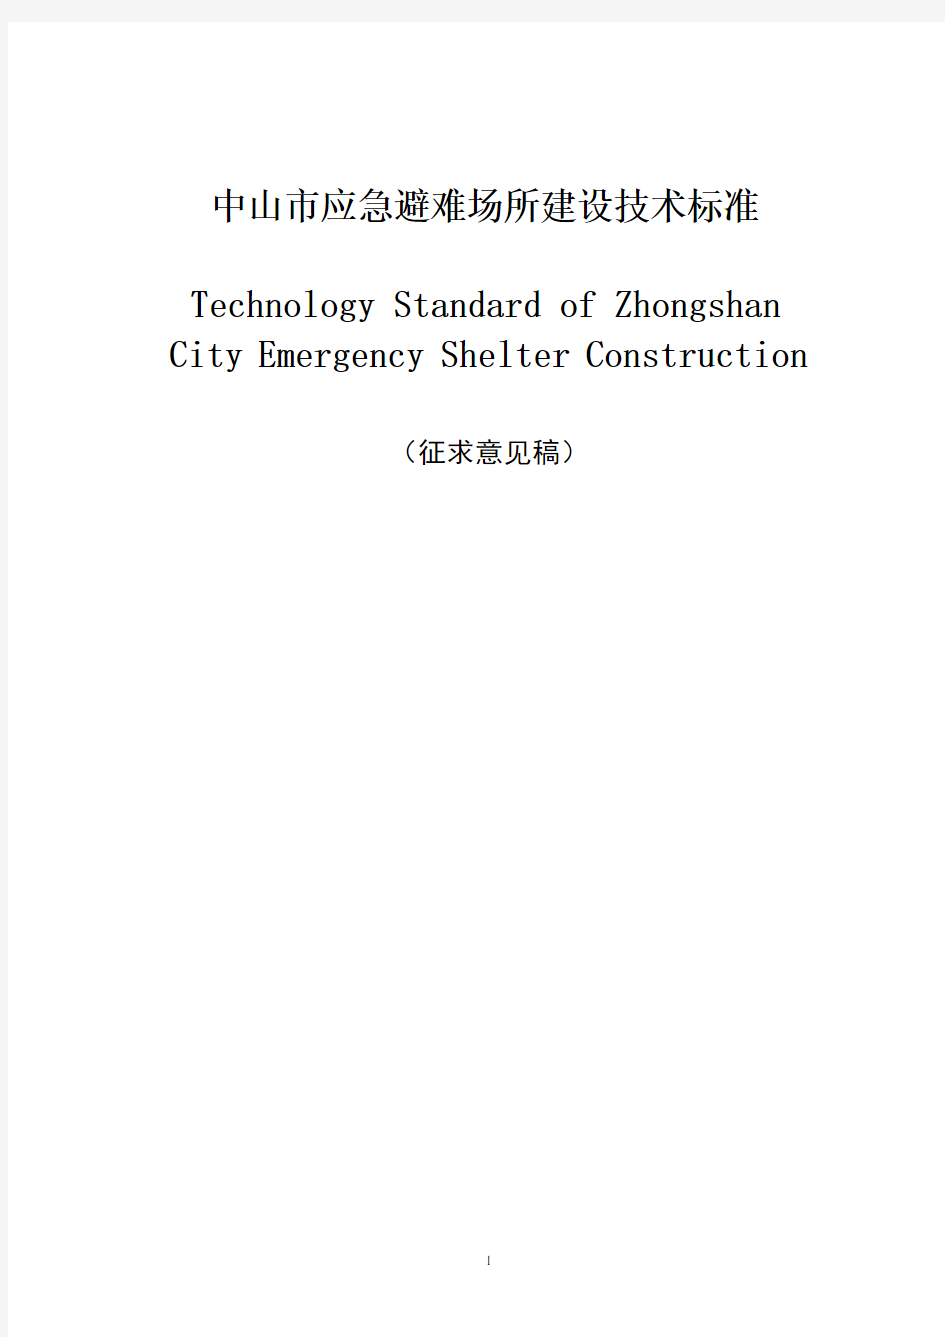 城市应急避难场所建设技术标准.